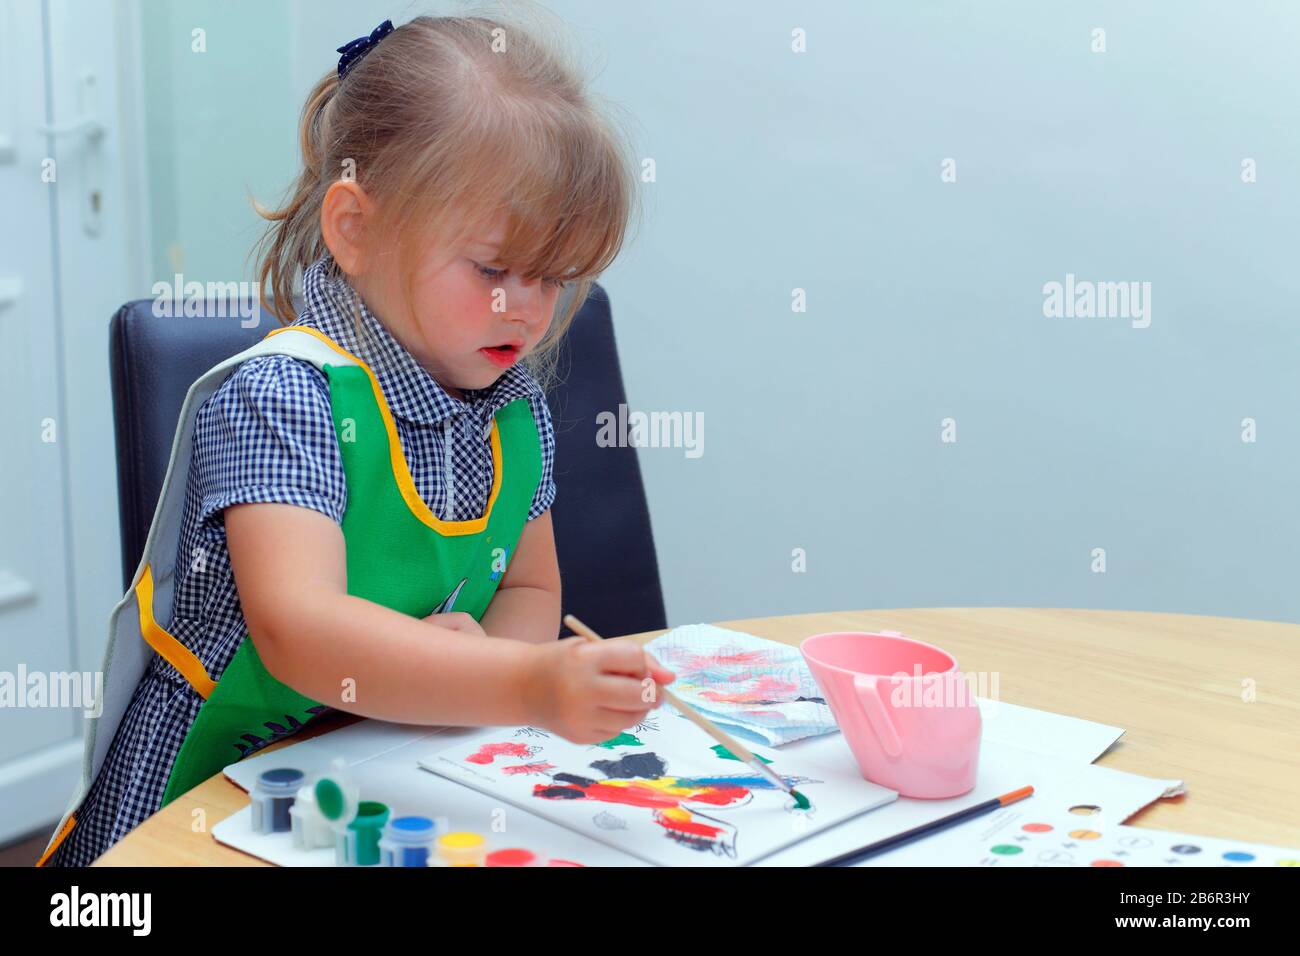 Ein kleines Mädchen, das mit einem Pinsel ein Bild malt Stockfoto